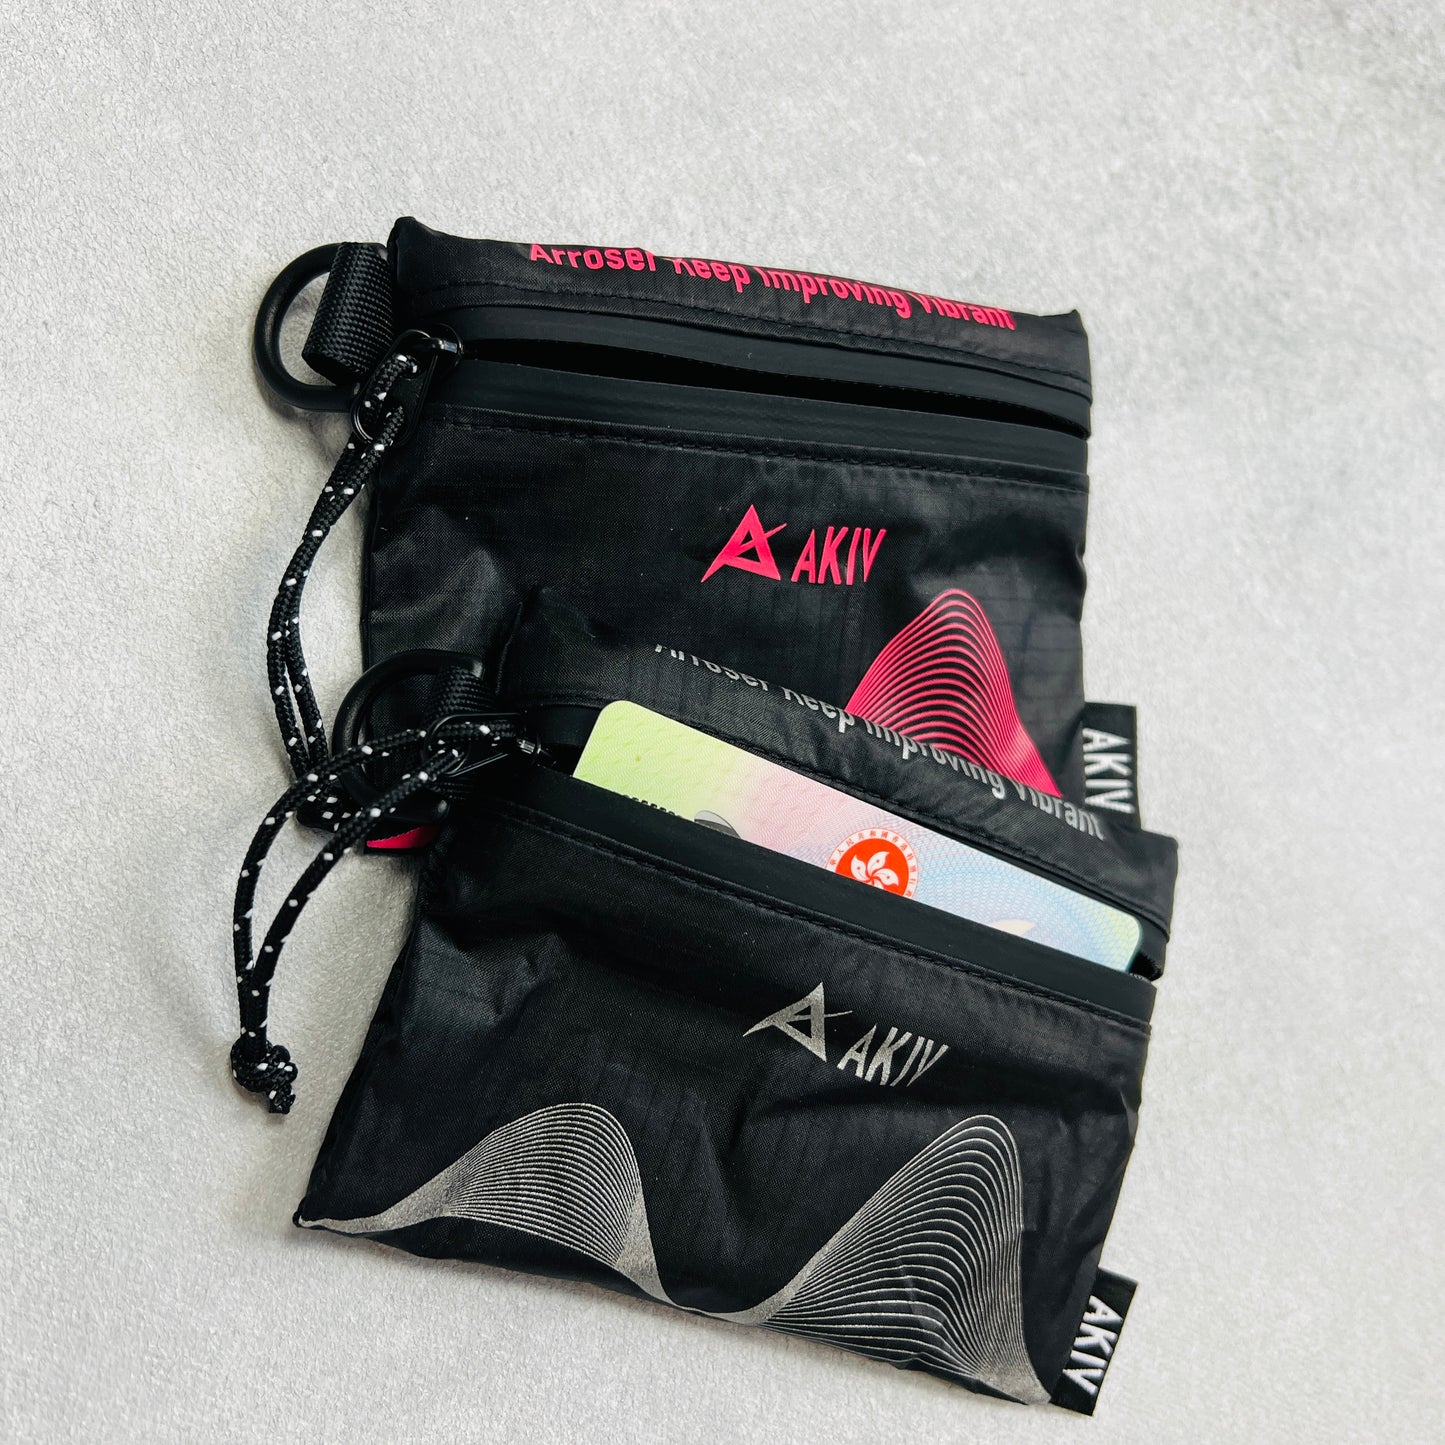 AKIV Waterproof and Sweatproof Wallet